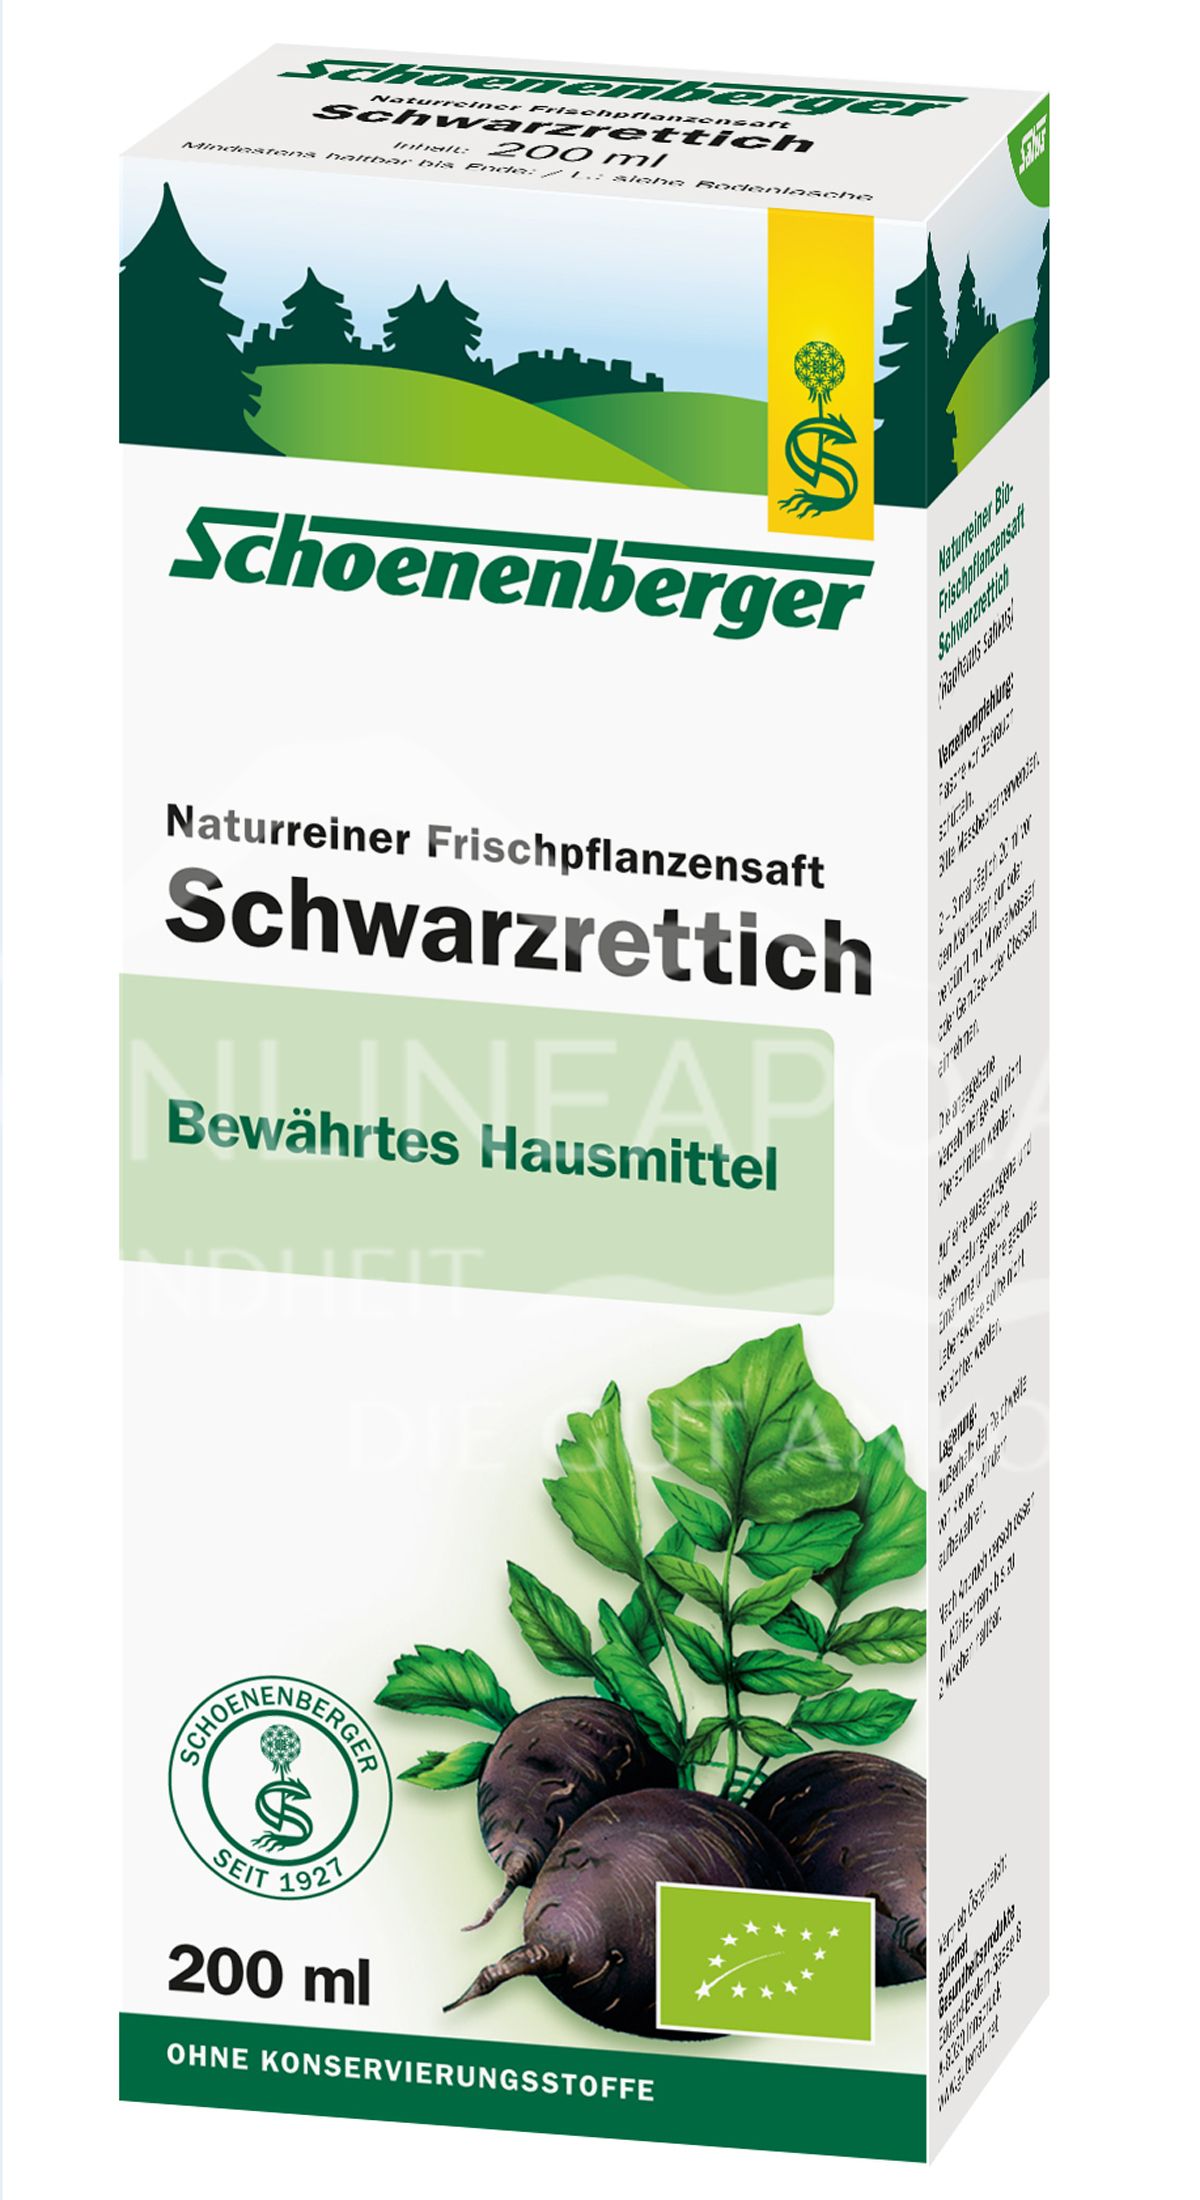 Schoenenberger Schwarzrettich Naturreiner Frischpflanzensaft (BIO)